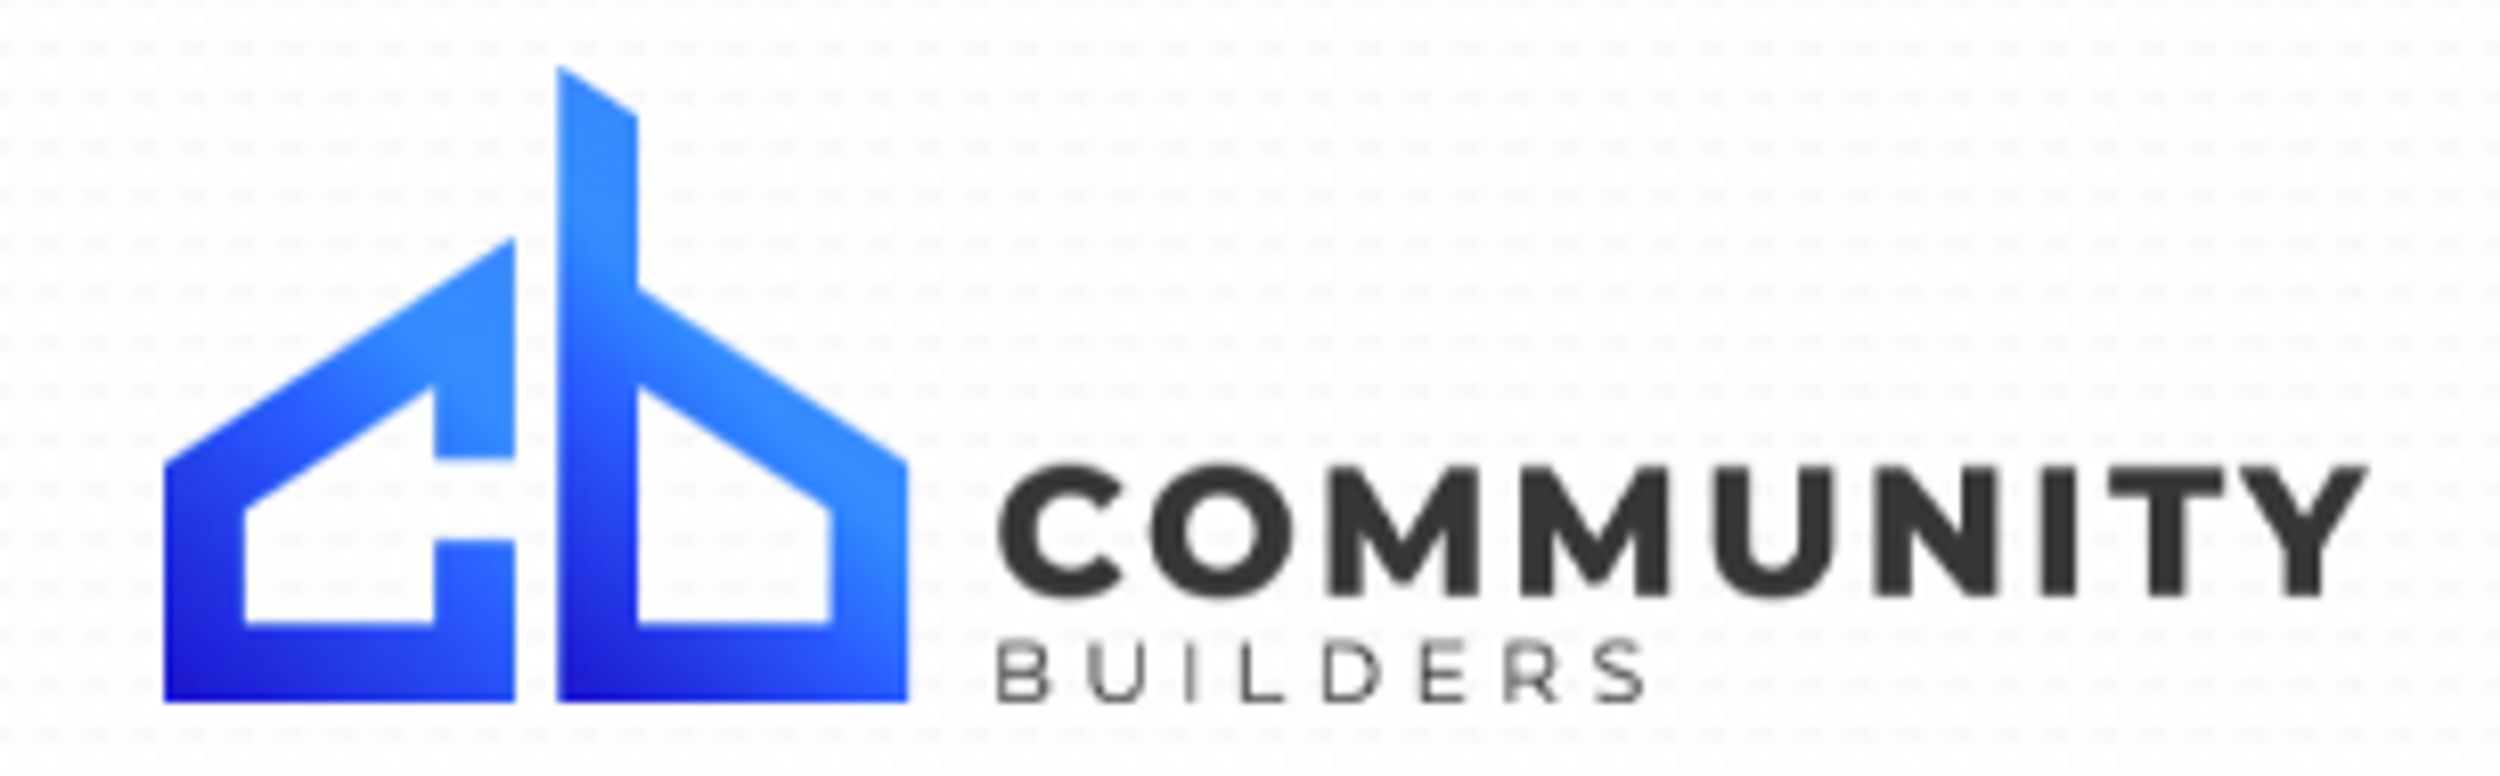 Community Builders  Community Builders 